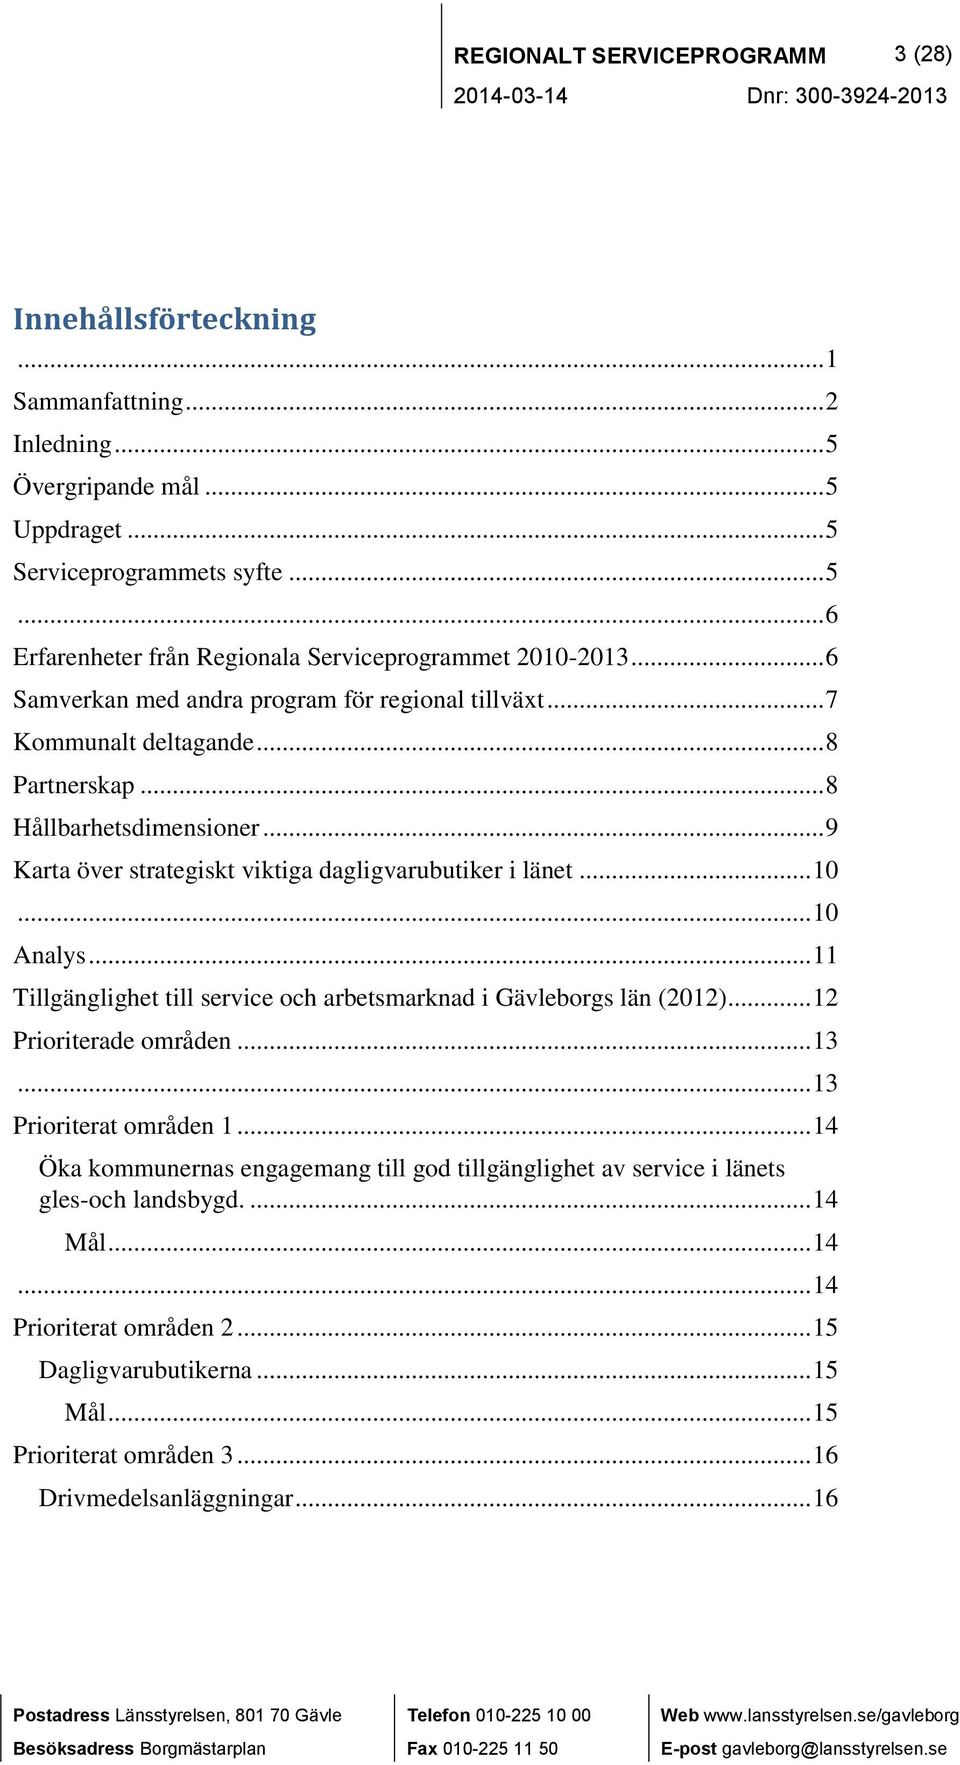 .. 10 Analys... 11 Tillgänglighet till service och arbetsmarknad i Gävleborgs län (2012)... 12 Prioriterade områden... 13... 13 Prioriterat områden 1.